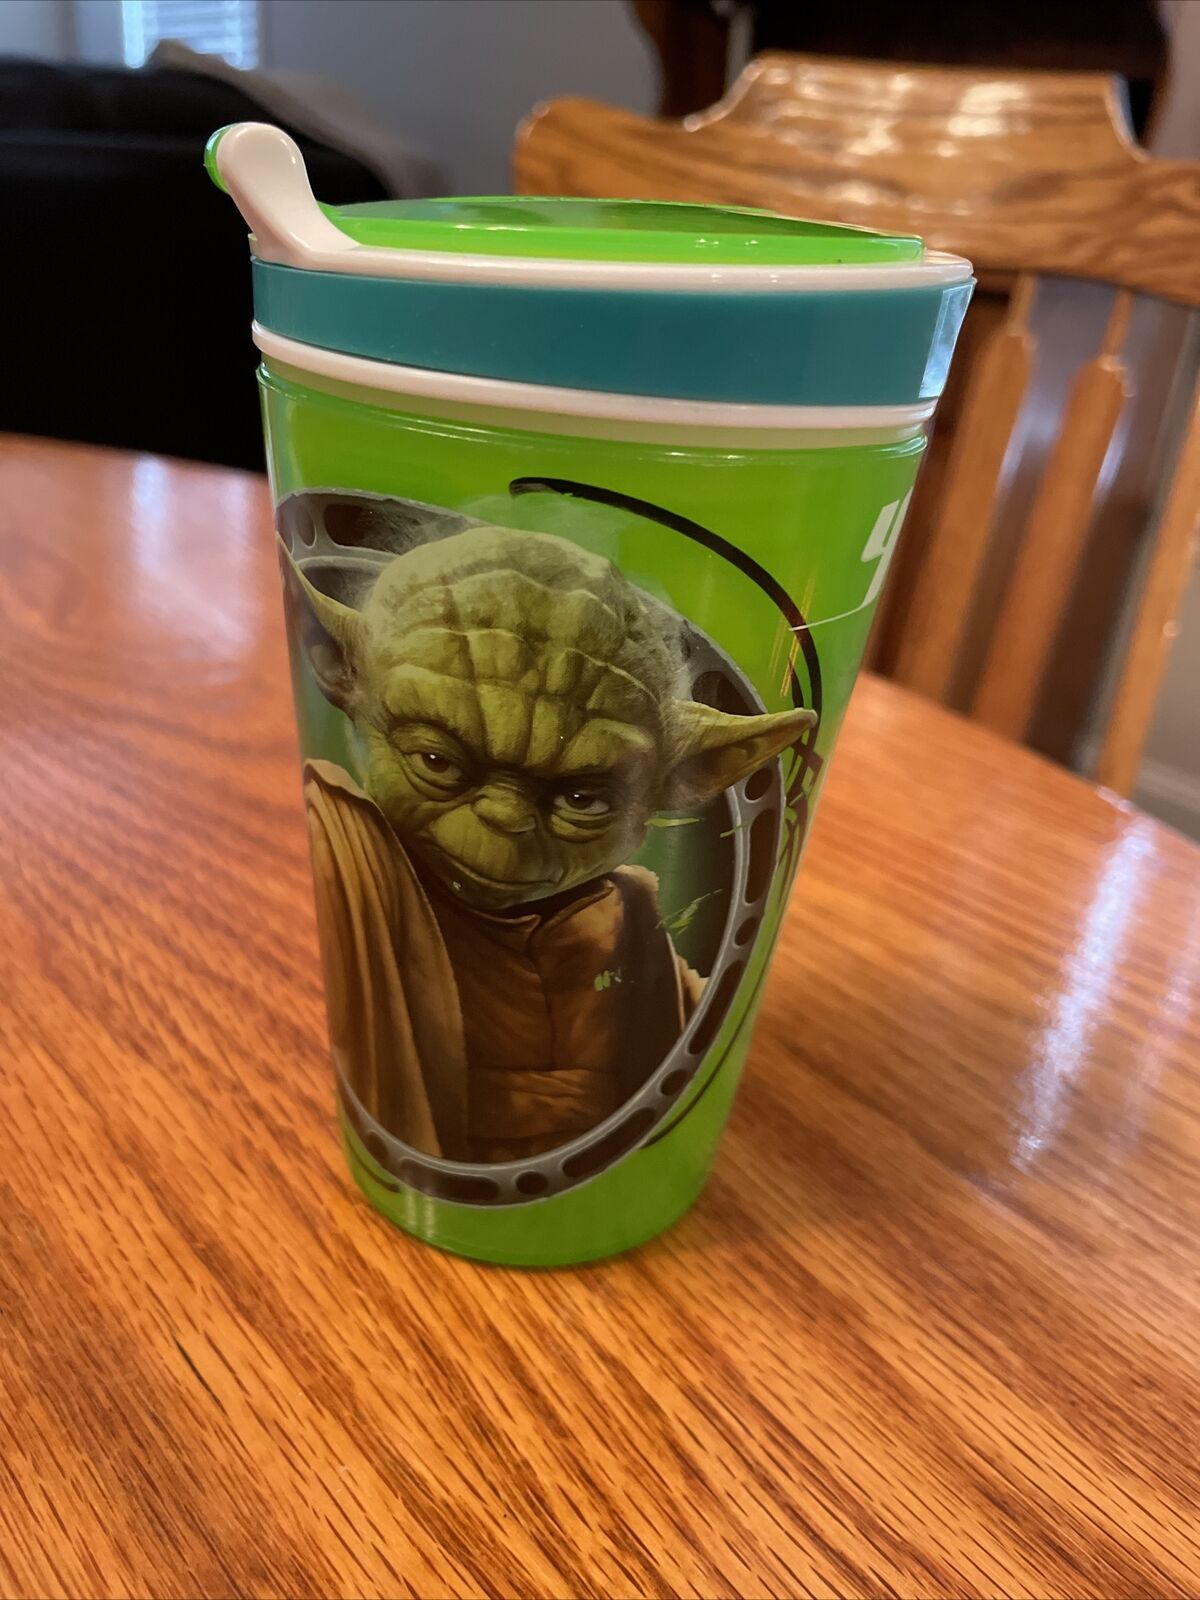 Snackeez Disney’s Star Wars Yoda 2-in-1 Snack & Drink Cup No Straw  8oz